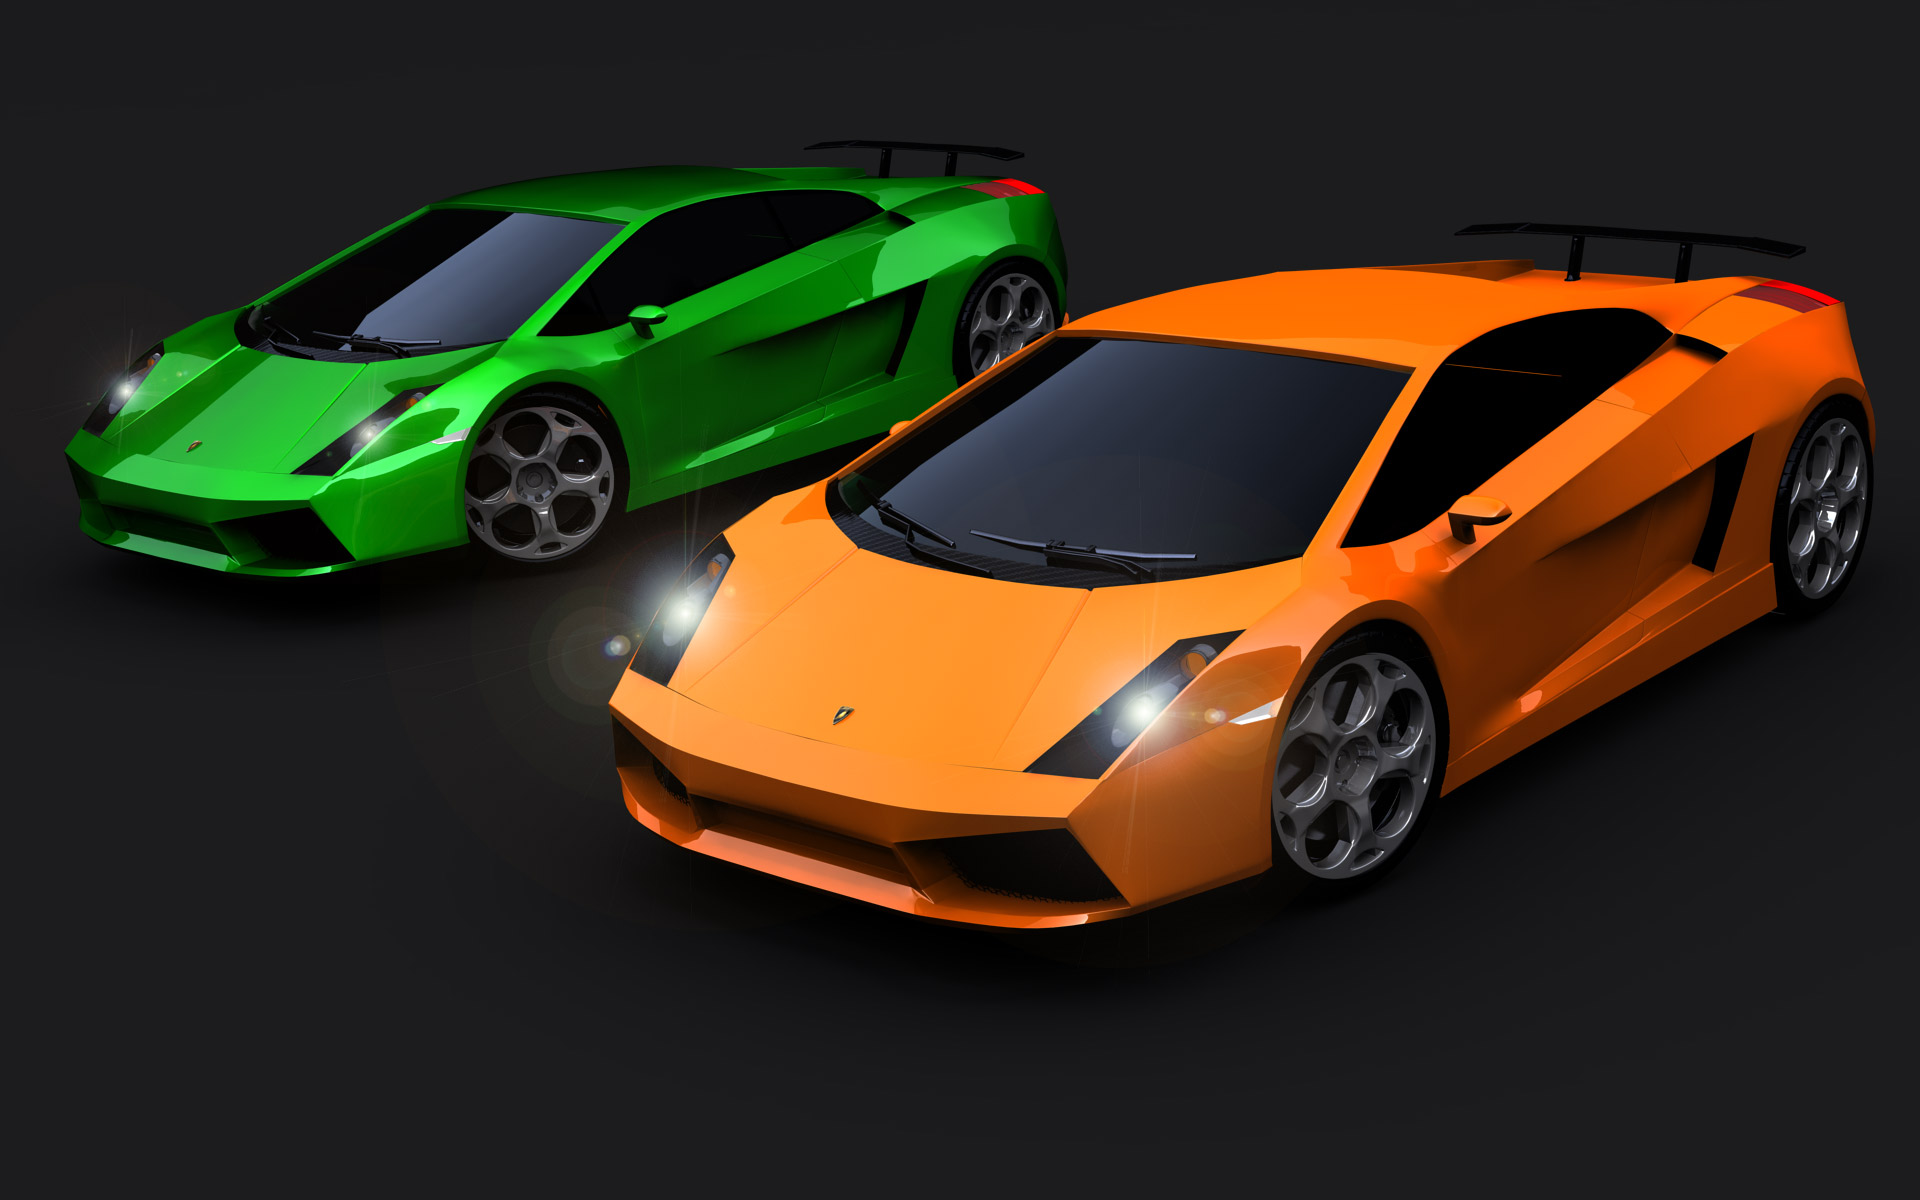 Desktop Images Of Lamborghini Cars Wallpaper - Car Lamborghini Orange Wallpaper Hd For Mobile - HD Wallpaper 